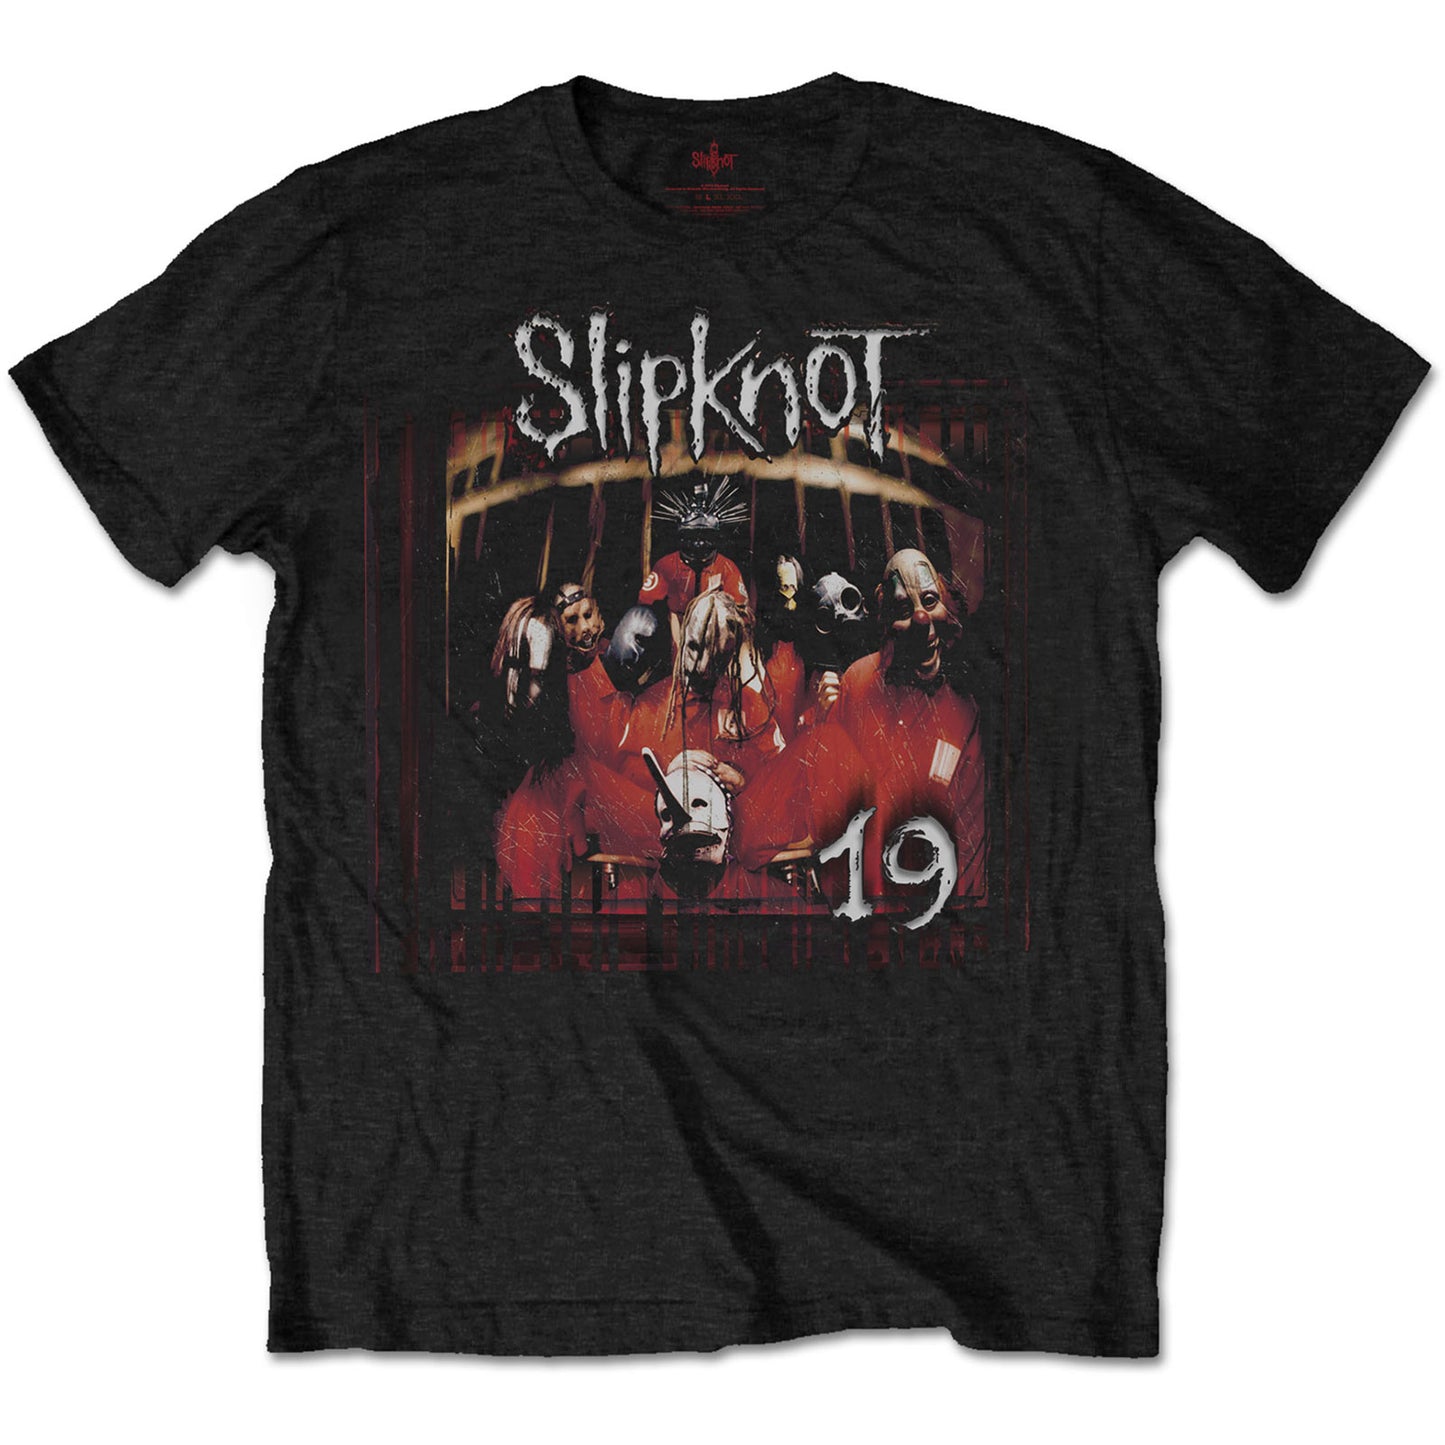 SLIPKNOT UNISEX T-SHIRT: DEBUT ALBUM 19 YEARS